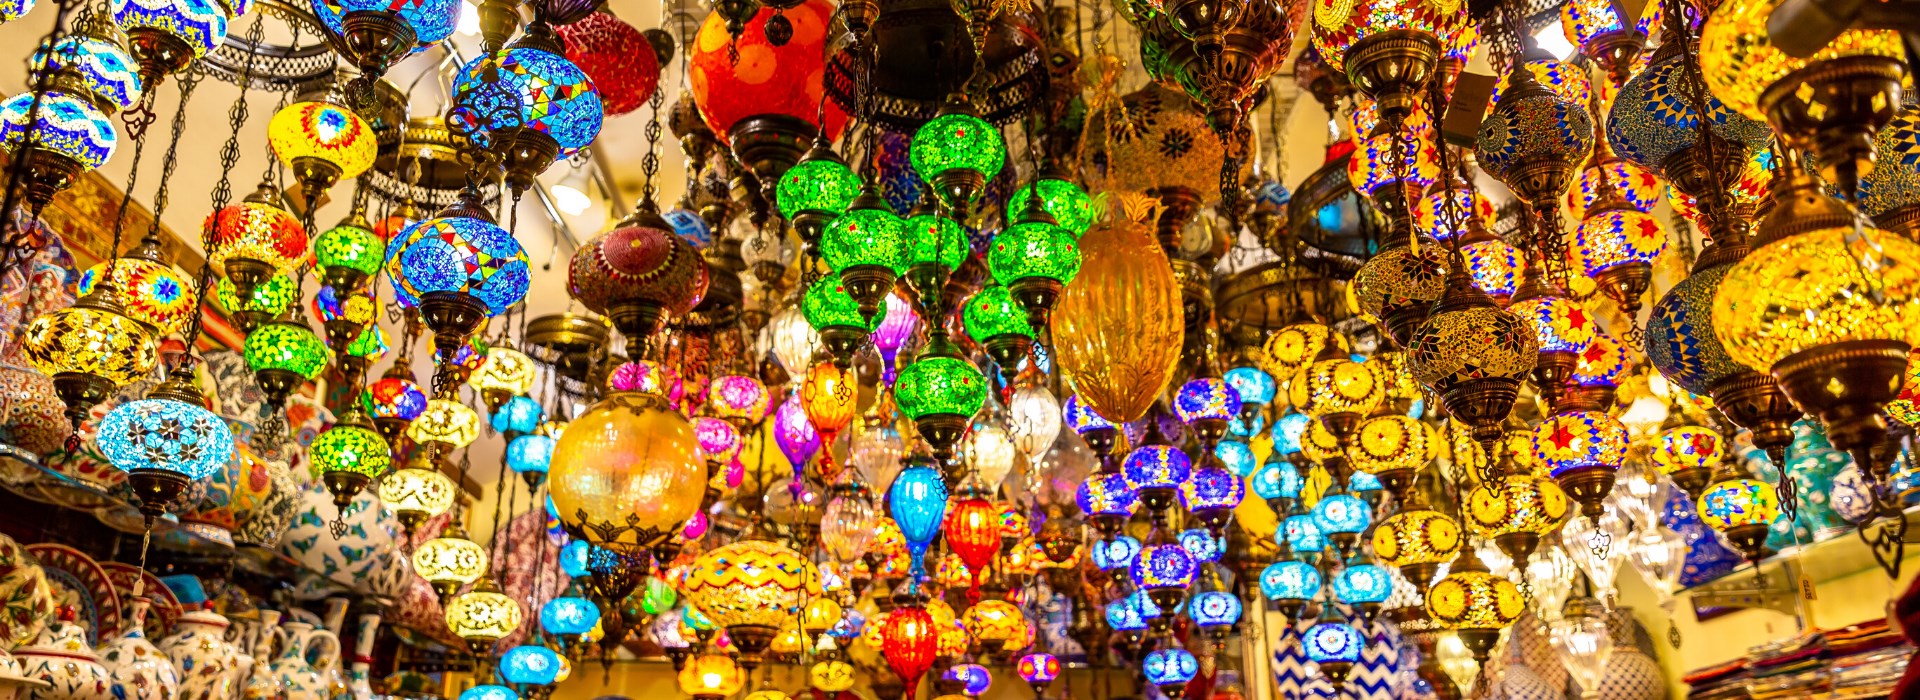 Visiter Le grand Bazar - Turquie